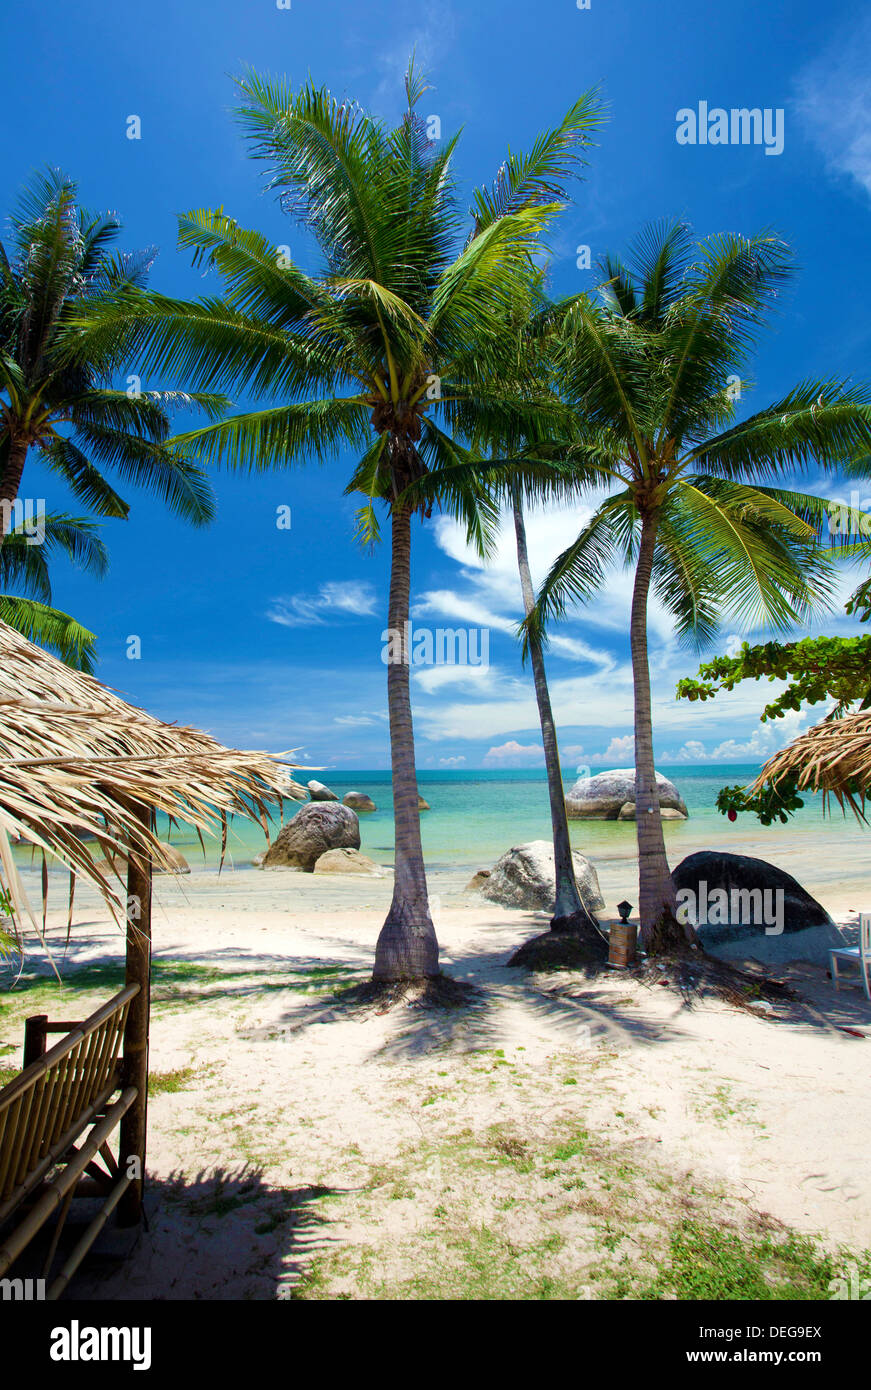 Palm trees and Lamai Beach, Koh Samui, Thailand, Southeast Asia, Asia Stock Photo